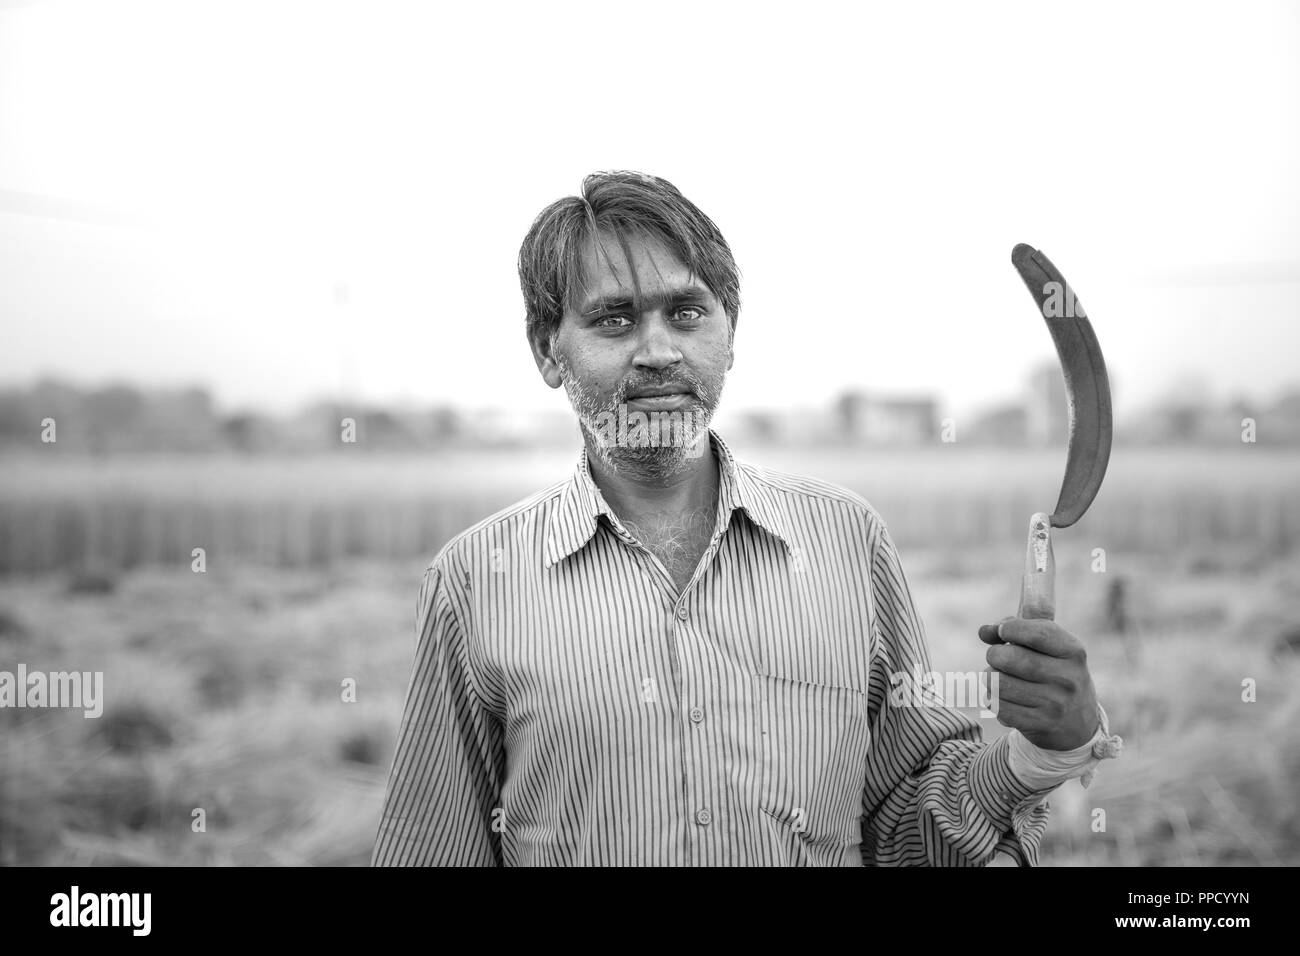 Noir & blanc, portrait of Indian farmer dans champ de blé récolte la drépanocytose sur son épaule et regardant la caméra. Banque D'Images